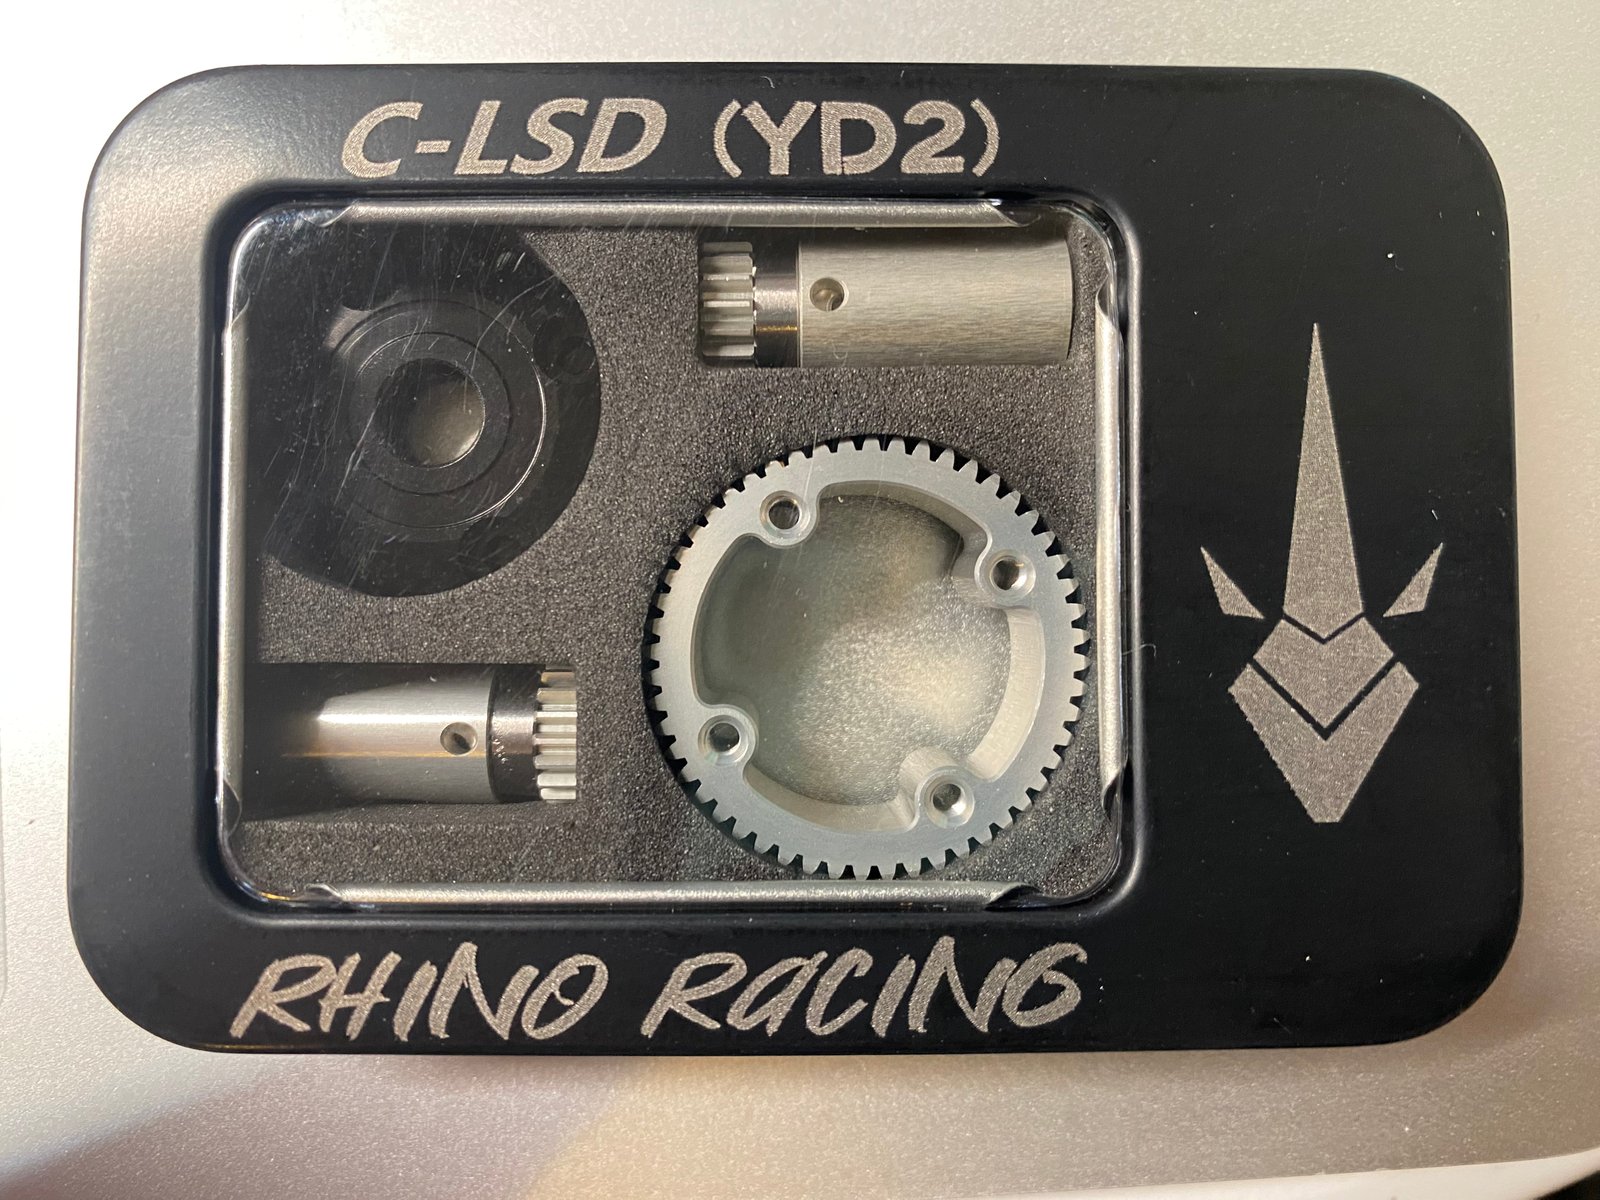 【新着商品】RHINO RACING C-LSD for yd-2 デフギア